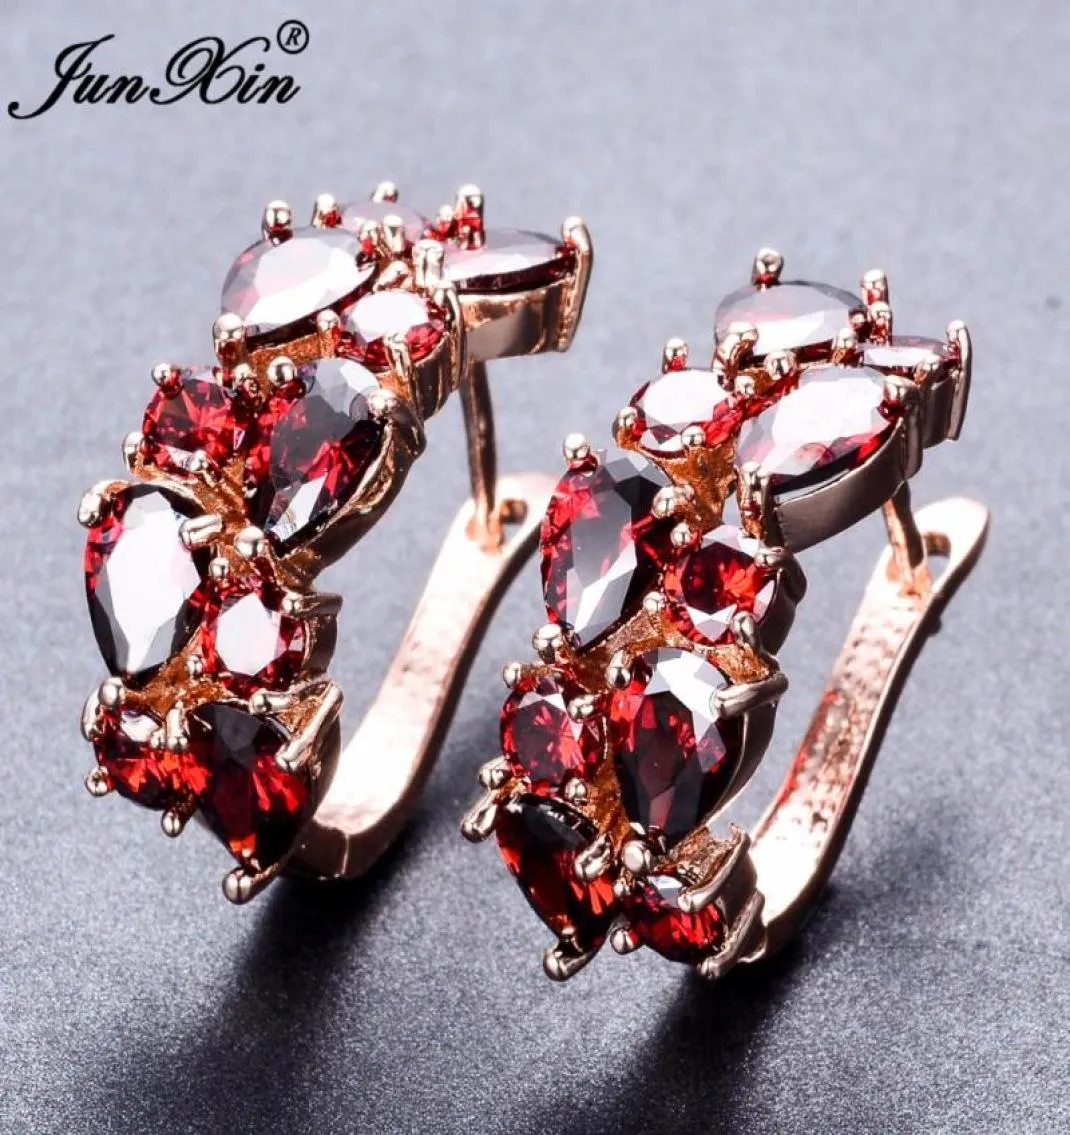 Junxin Luxury Female Big Hoop Earrings Rose Gold Filled Red White Zircon Earrings Fashion Jewelry Wedding For Women3283940